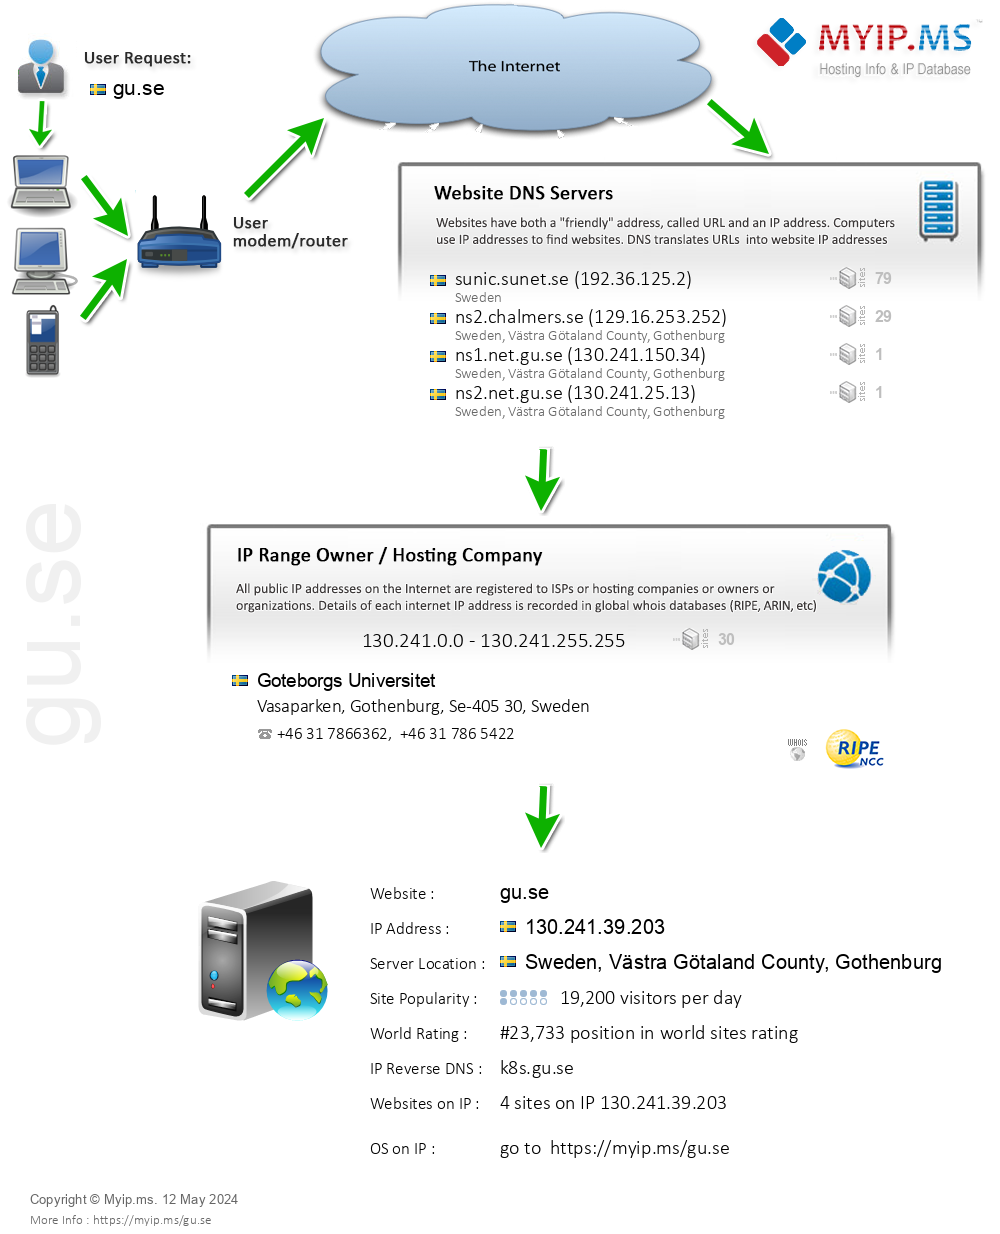 Gu.se - Website Hosting Visual IP Diagram